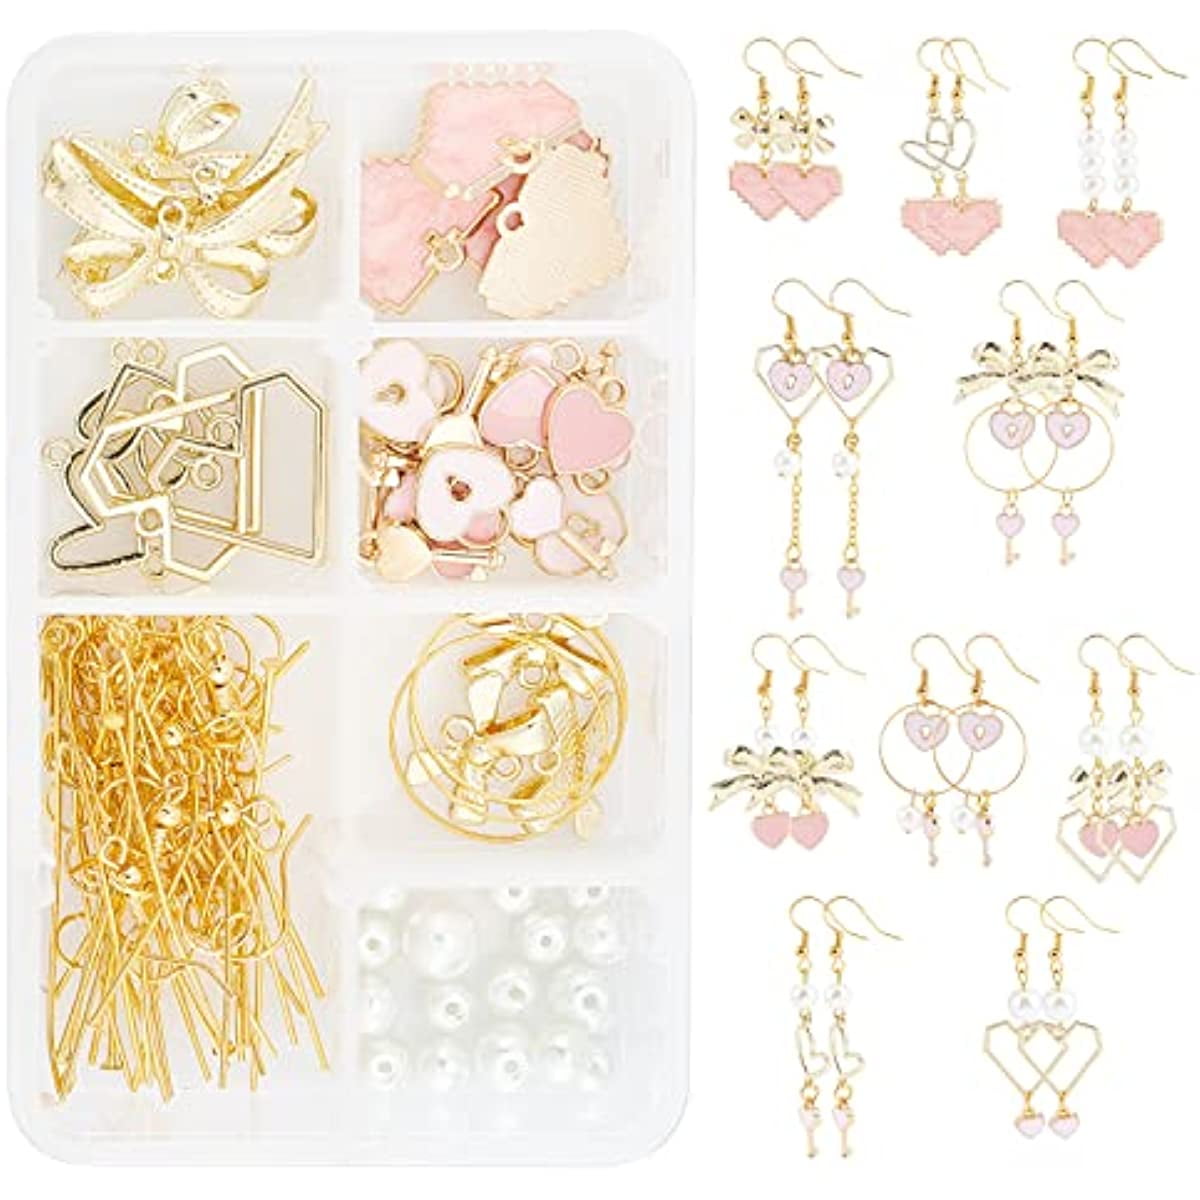 DIY Jewelry Kit - Golden Bliss Earring Kit by